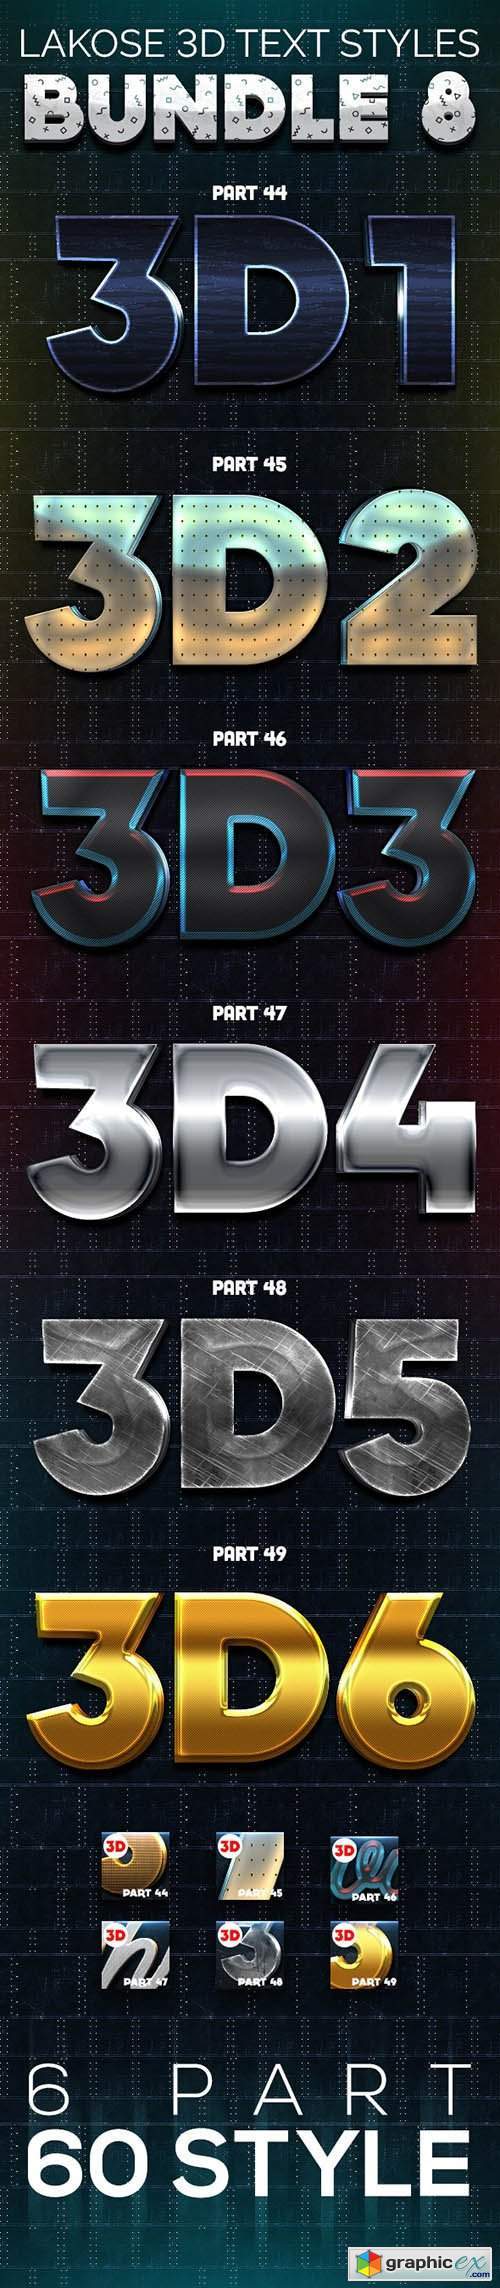 Lakose 3D Text Styles Bundle 8